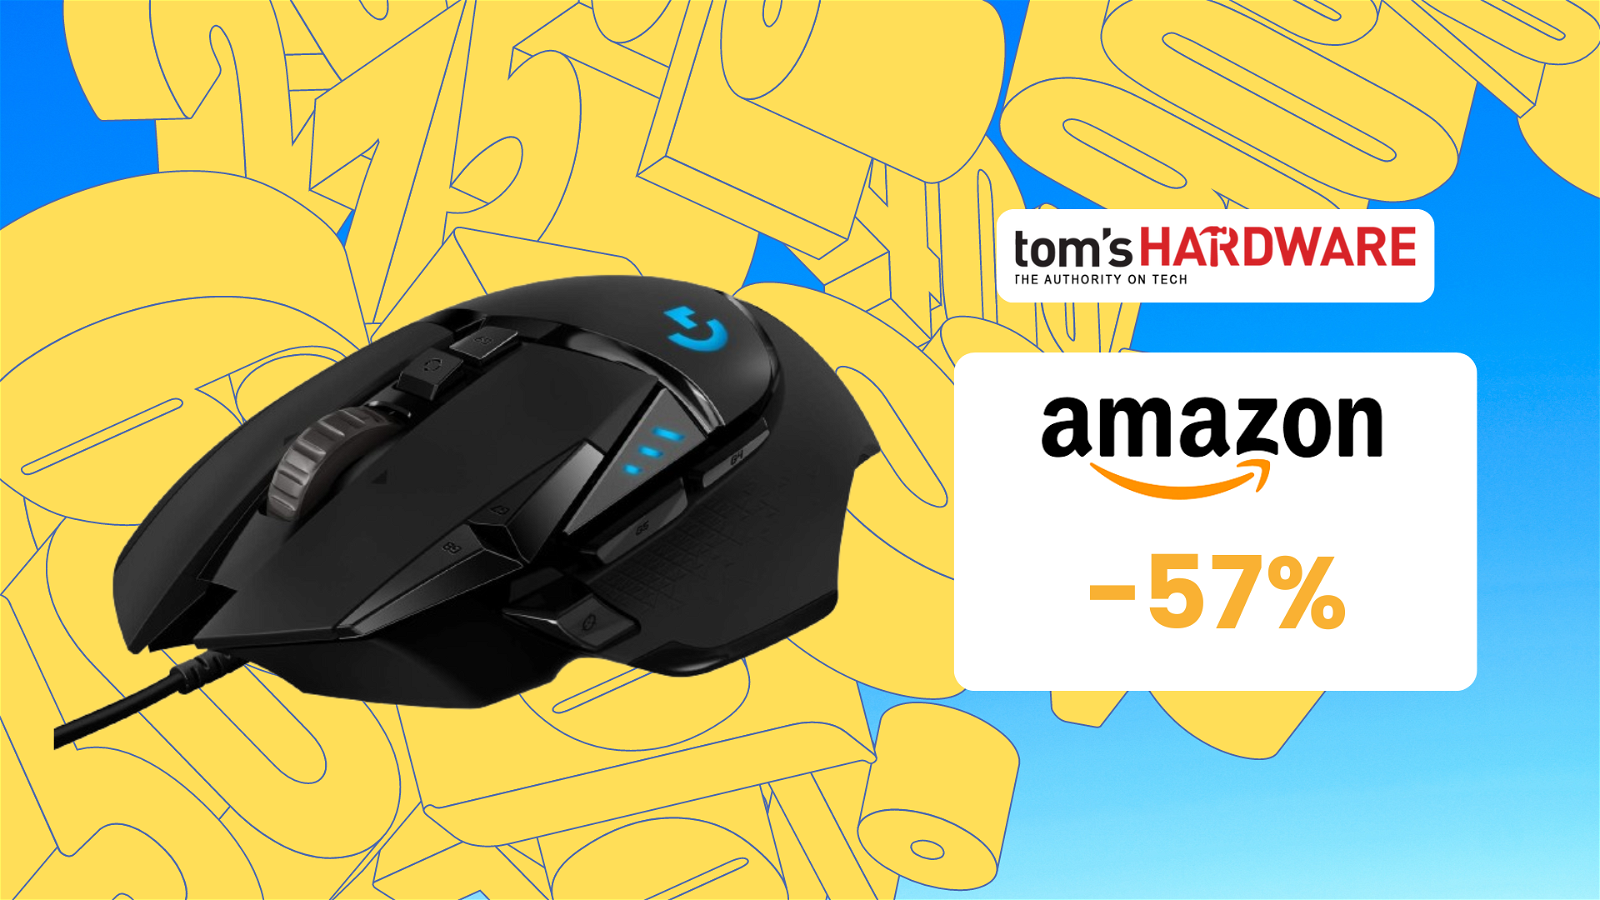 Immagine di Logitech G502 HERO, un ottimo mouse gaming a prezzo stracciato! (-57%)